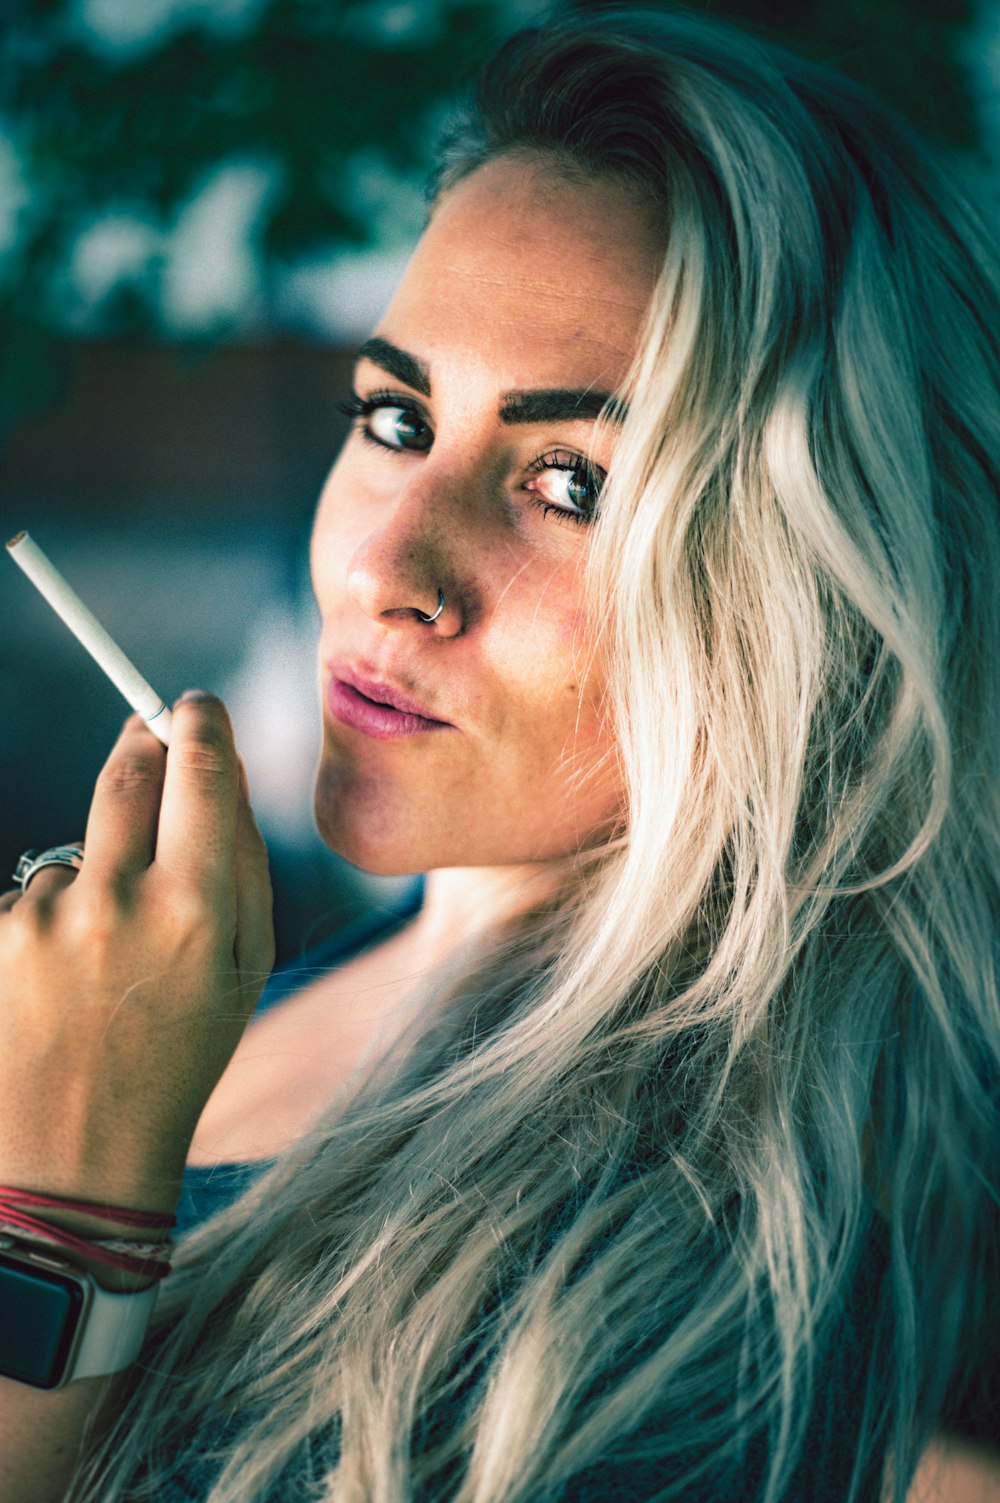 담배를 들고 있는 여자